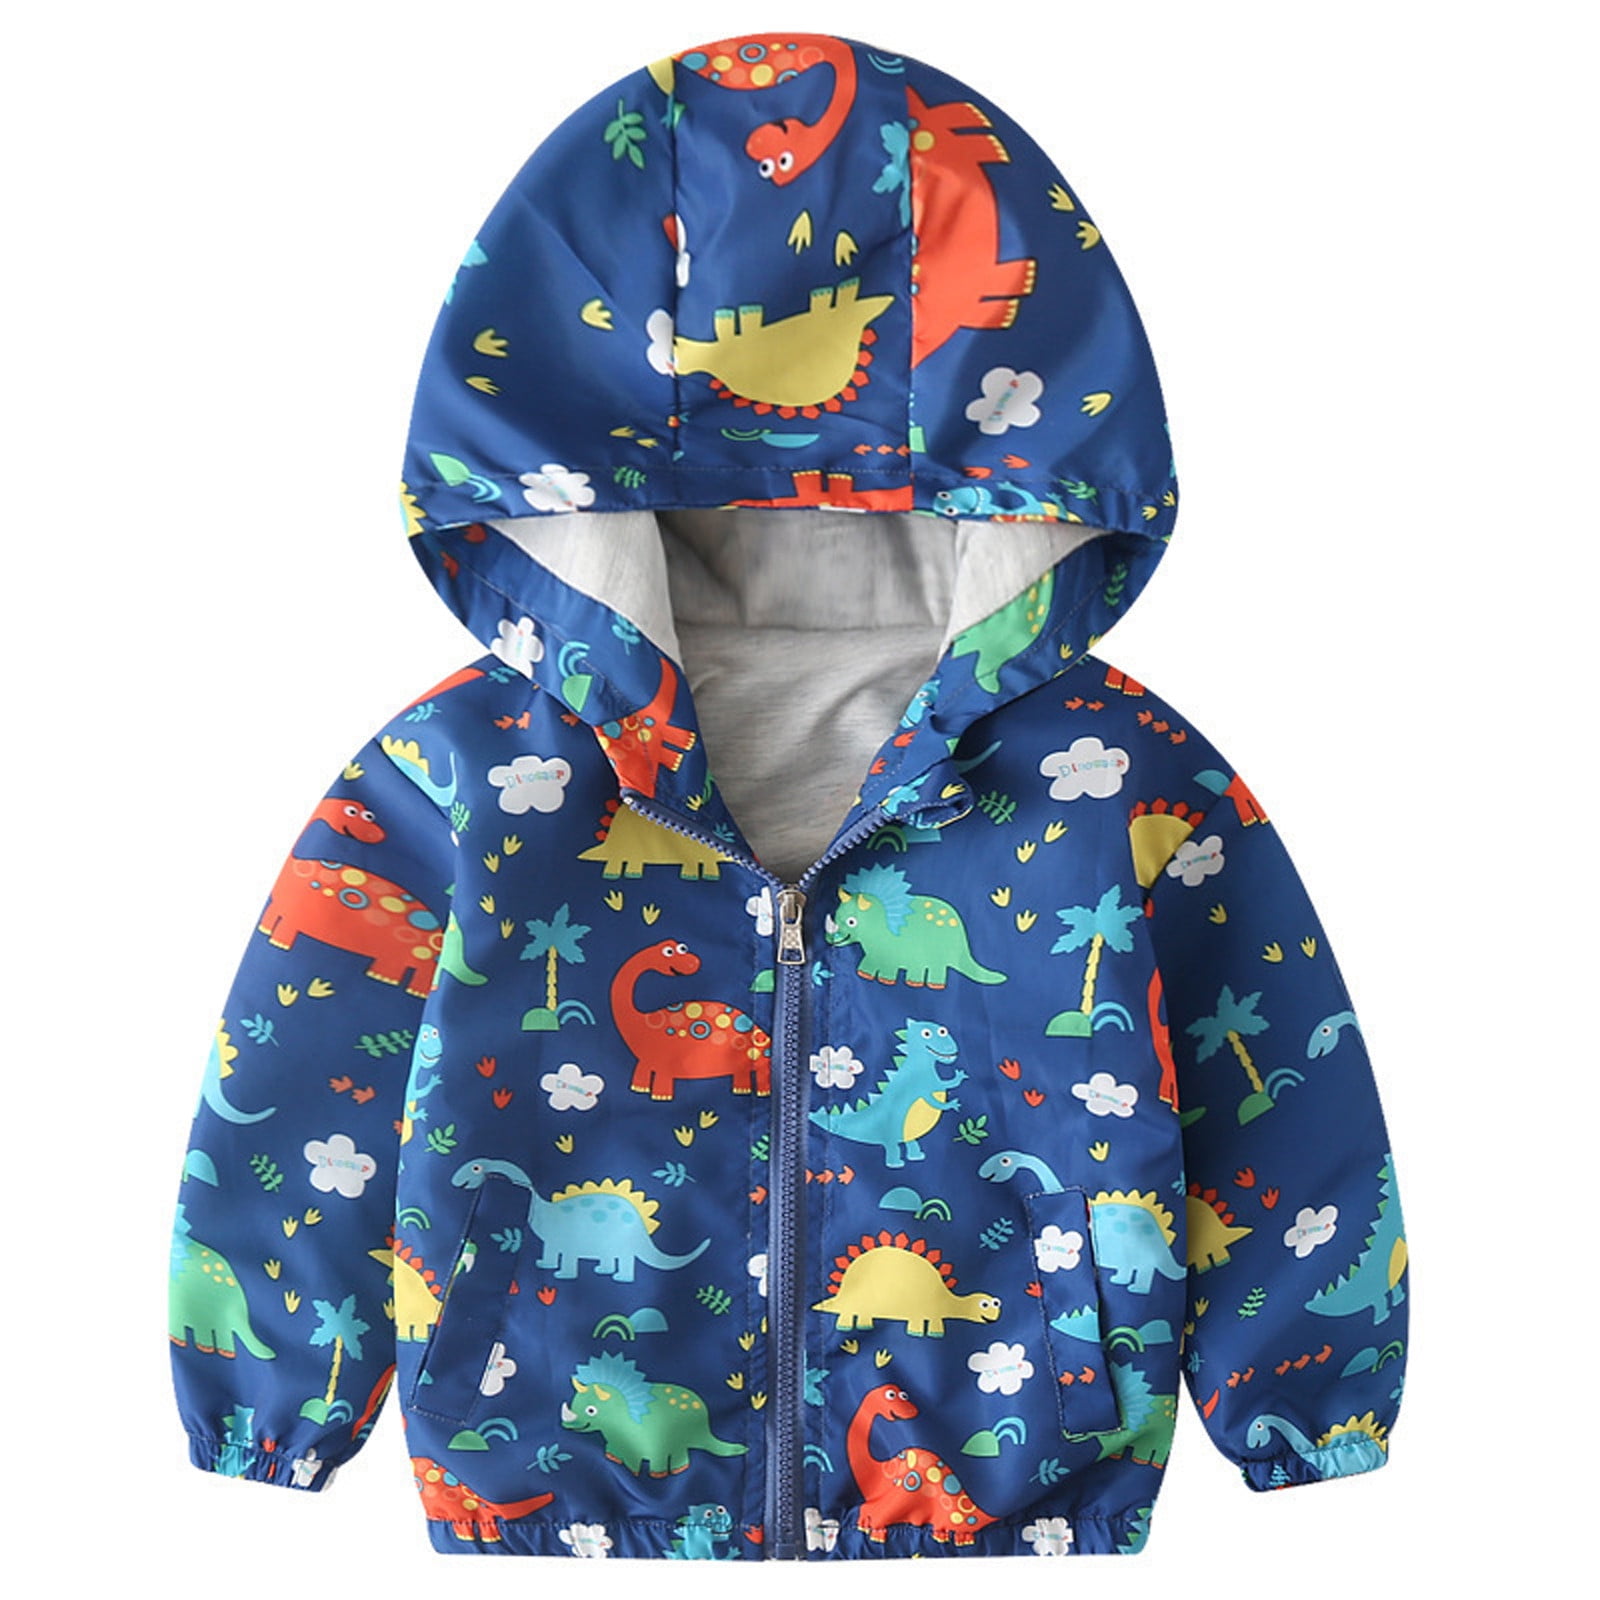 Jacket Toddler Hooded Cartoon Windbreaker Outwear Dinosaur Boys ...